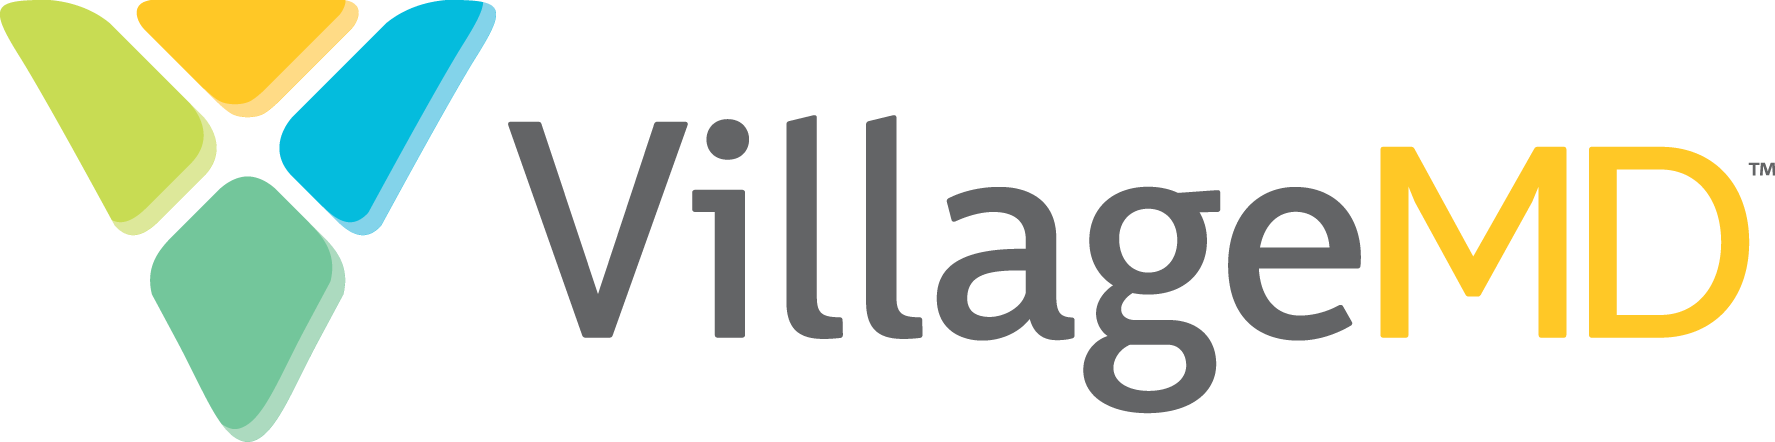 Jim Agnew Joins VillageMD as Senior Vice President, Corporate Development